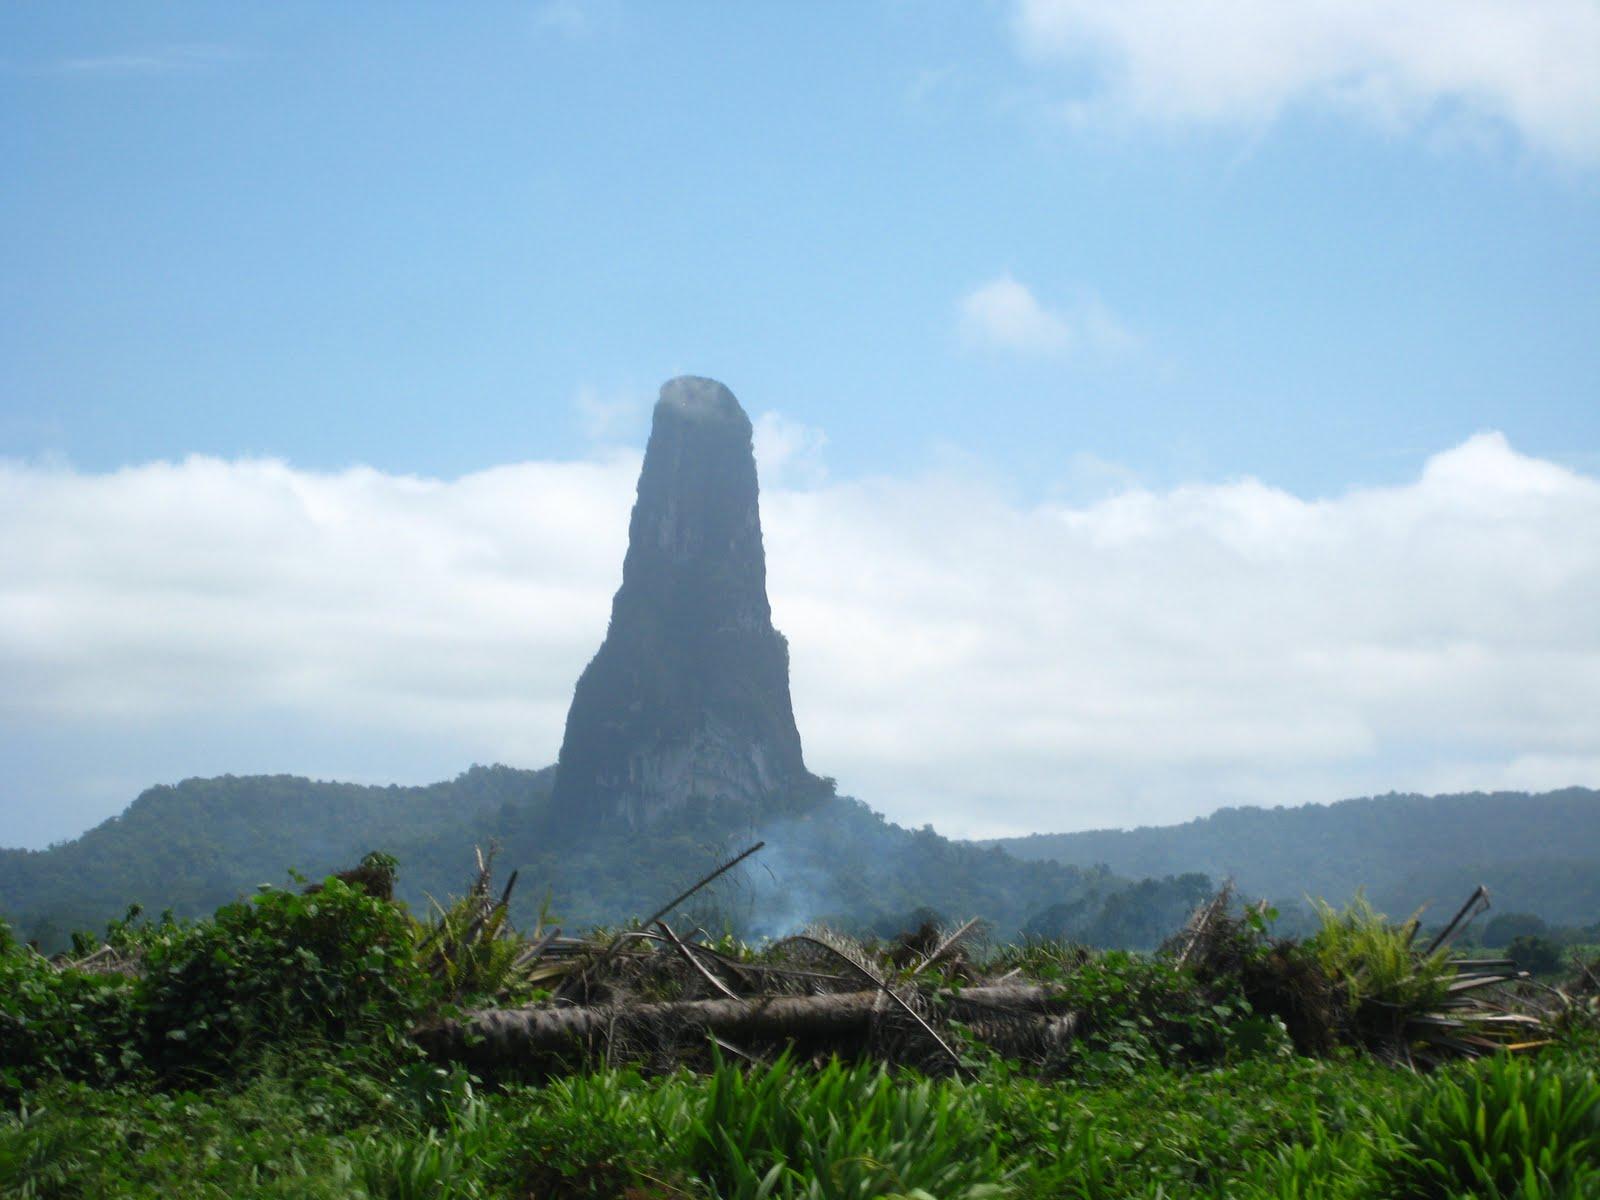 The Pico Cão Grande of São Tomé and Príncipe [1600x1200]